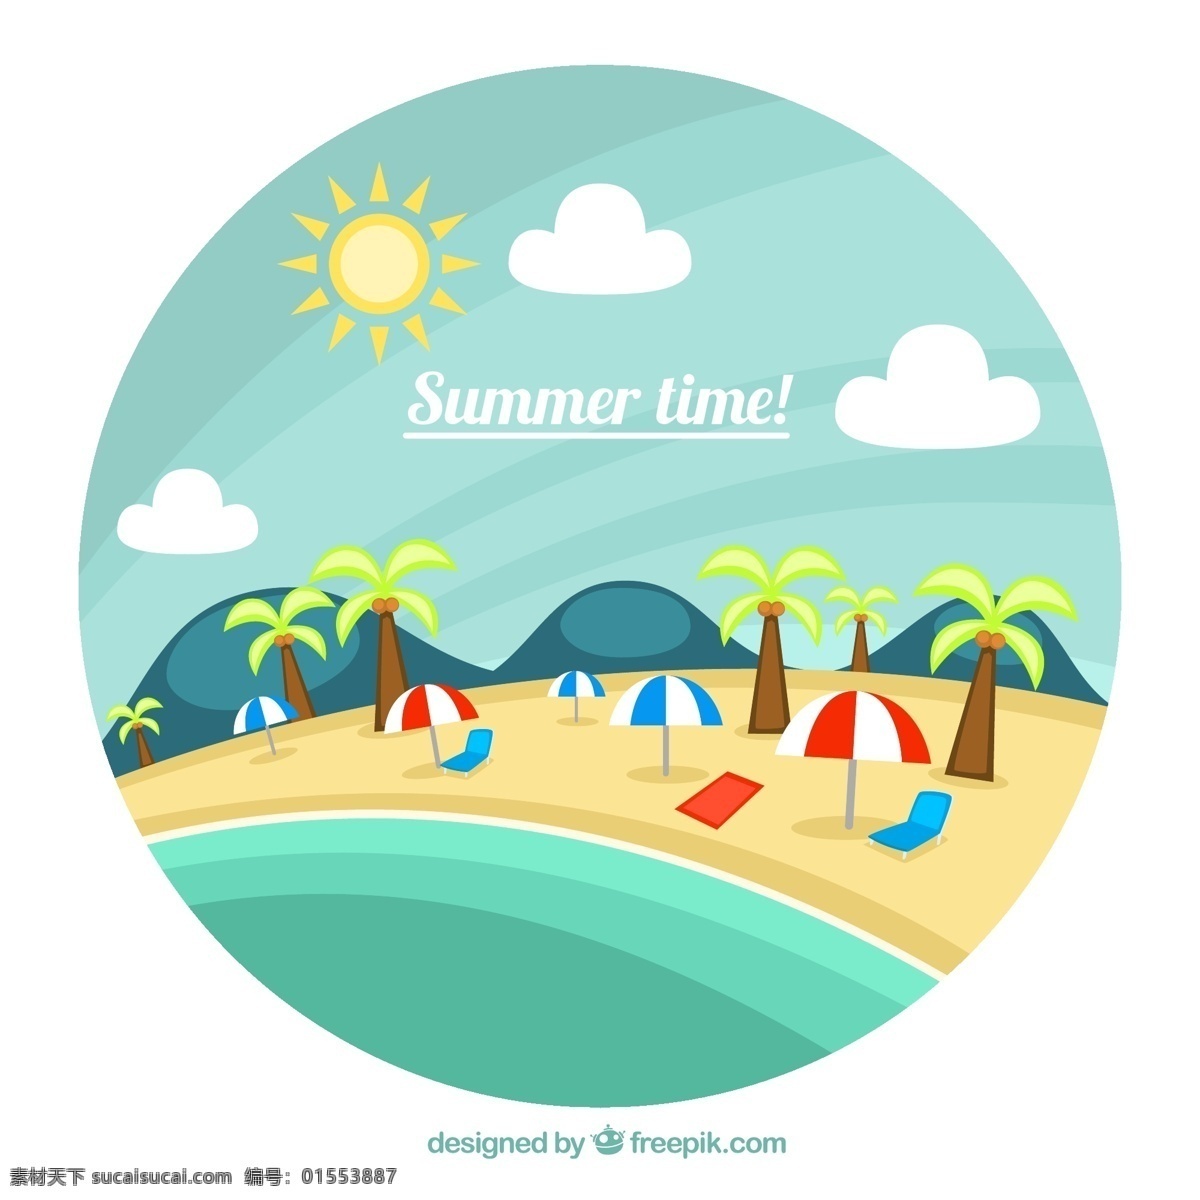 圆形 沙滩 风景 插画 矢量 椰子树 遮阳伞 躺椅 山 云朵 太阳 大海 海滩 夏 度假 矢量图 ai格式